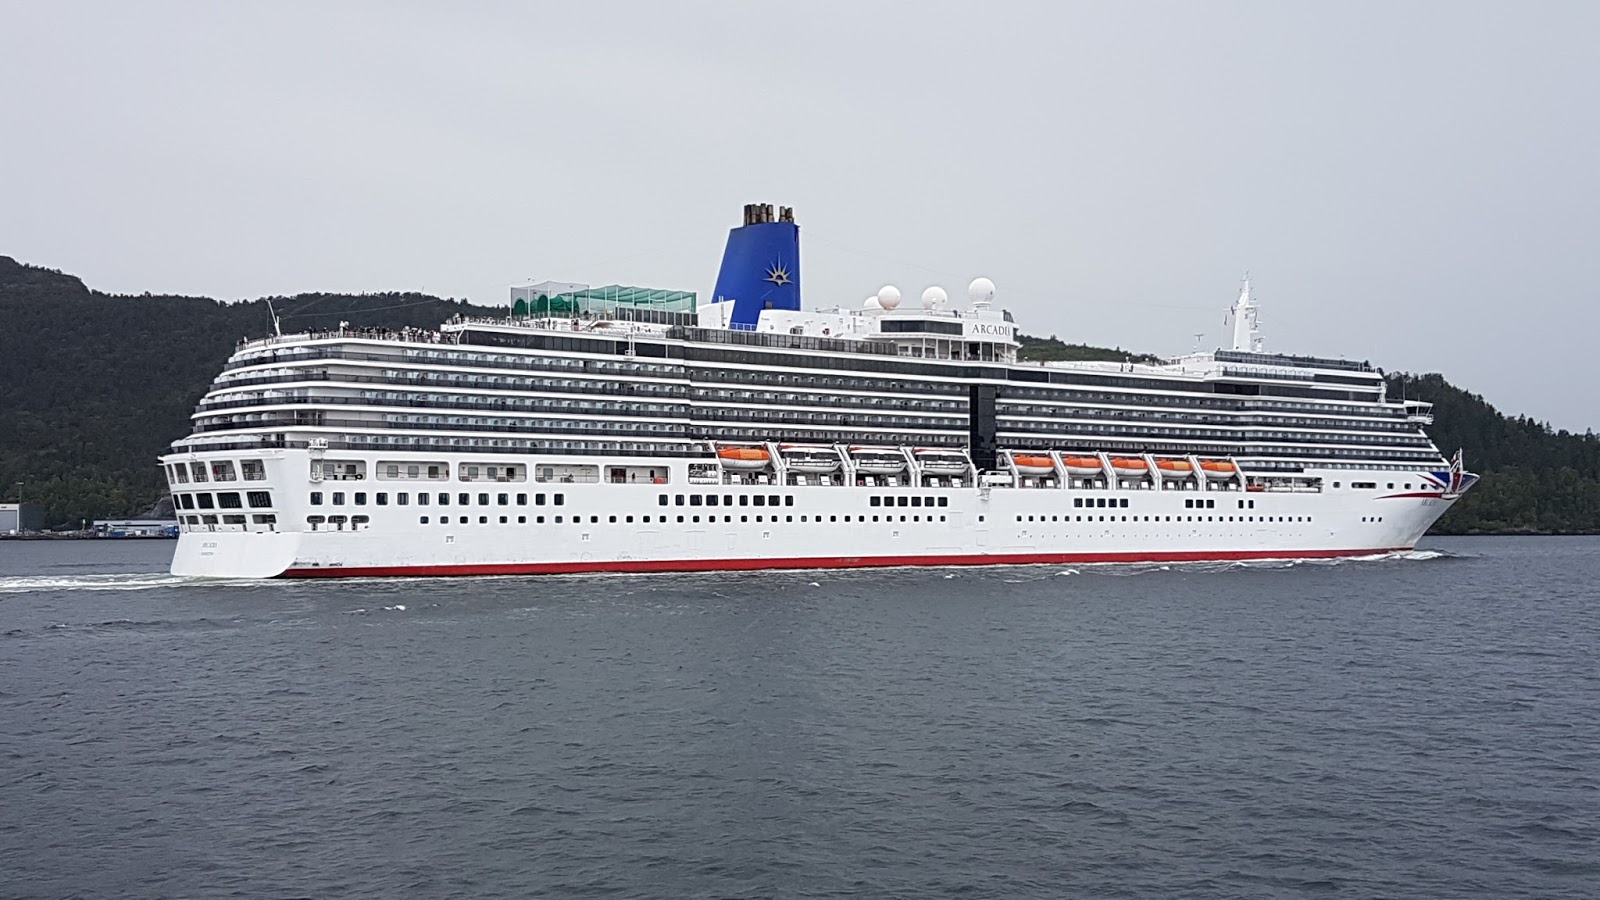 p and o arcadia cruise ship